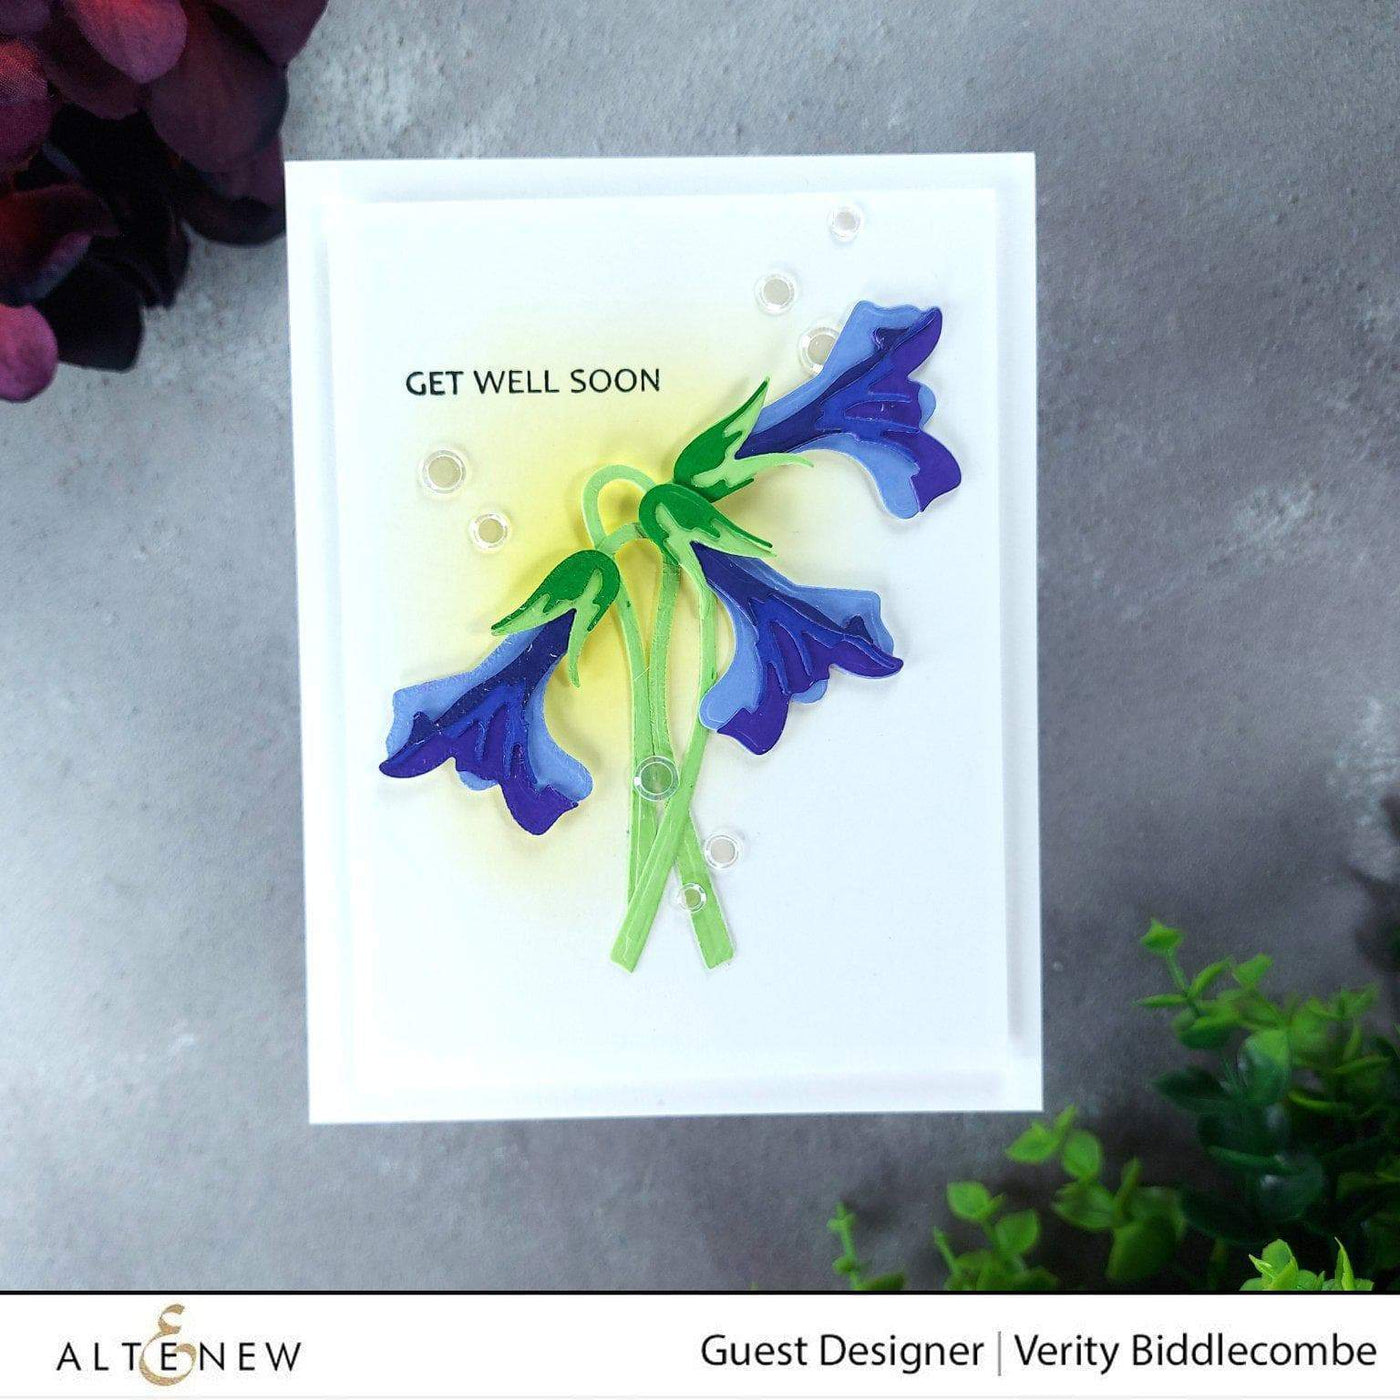 Dies Craft-A-Flower: Sweet Violet Layering Die Set